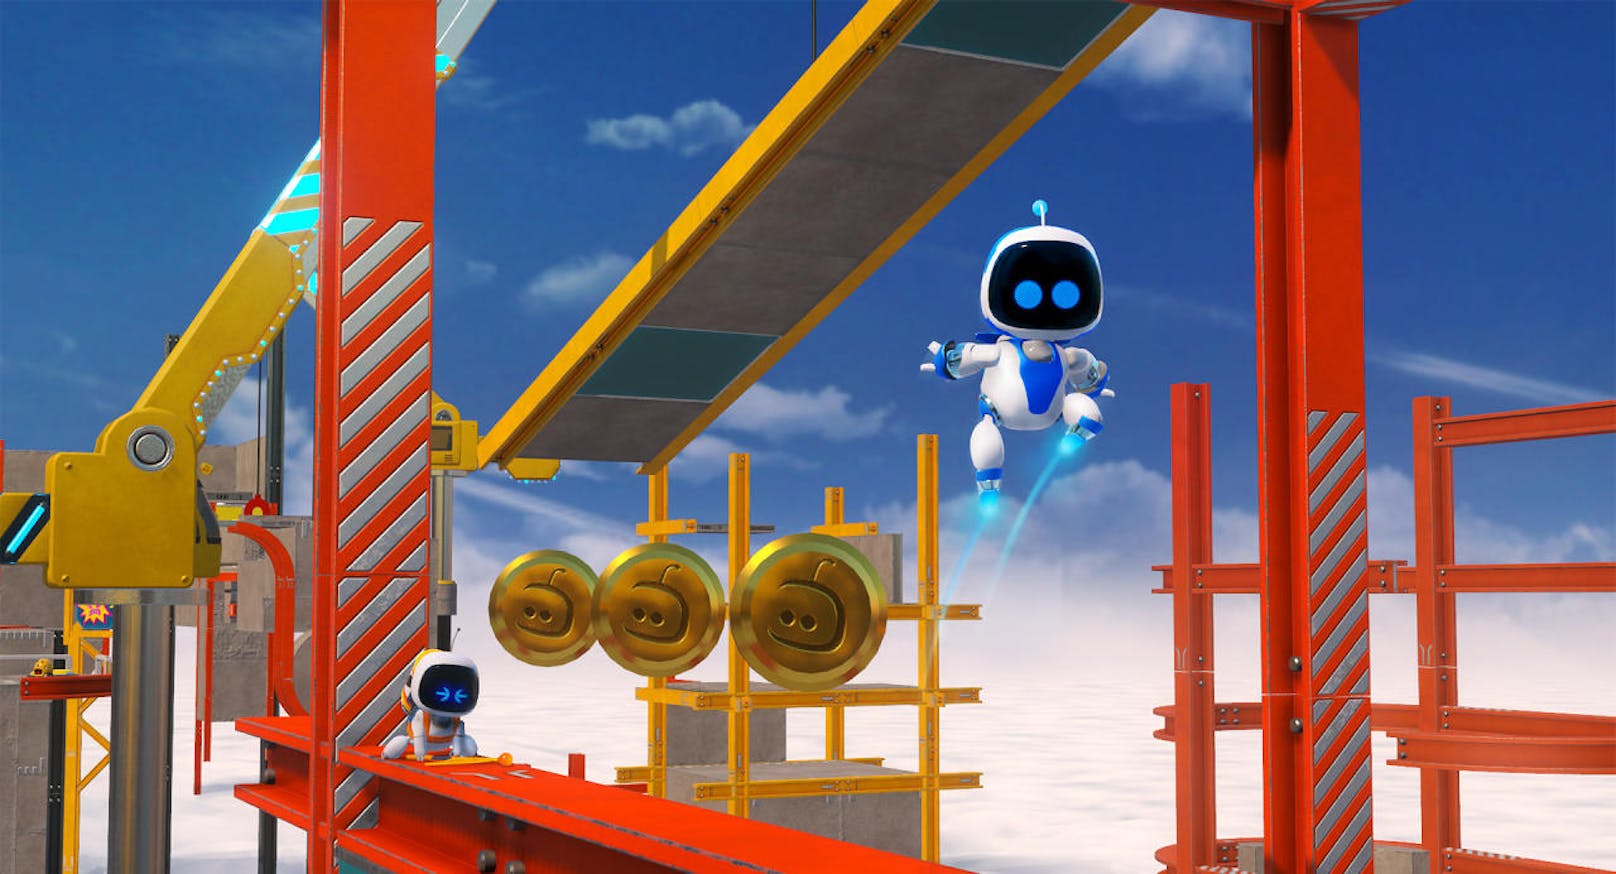 Mit Astro Bot betritt ein neuer Spieleheld das Game-Universum und erobert Herzen im Sturm. Verantwortlich dafür sind die Japan Studios, die mit Astro Bot: Rescue Mission für die PlayStation VR dem kleinen Roboter ein eigenes Spiel widmen.